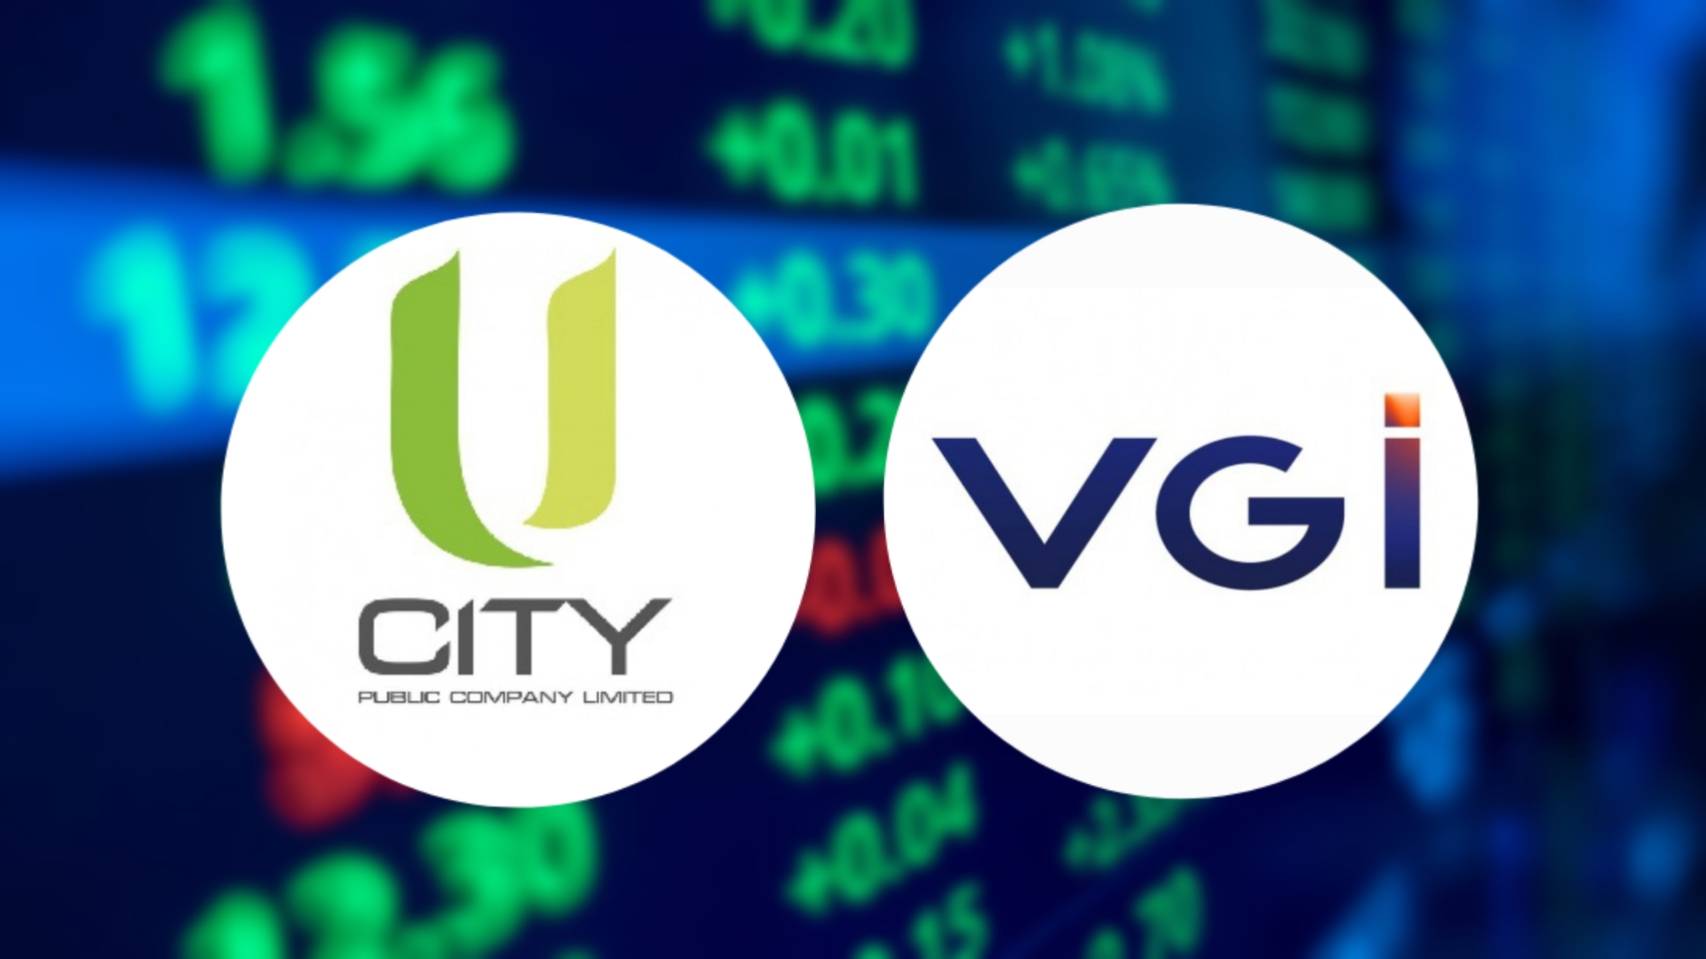 VGI-U ทุ่มเงิน 1.92 หมื่นล้าน ซื้อหุ้น “JMART-SINGER” เพิ่มโอกาสธุรกิจ – การเงิน